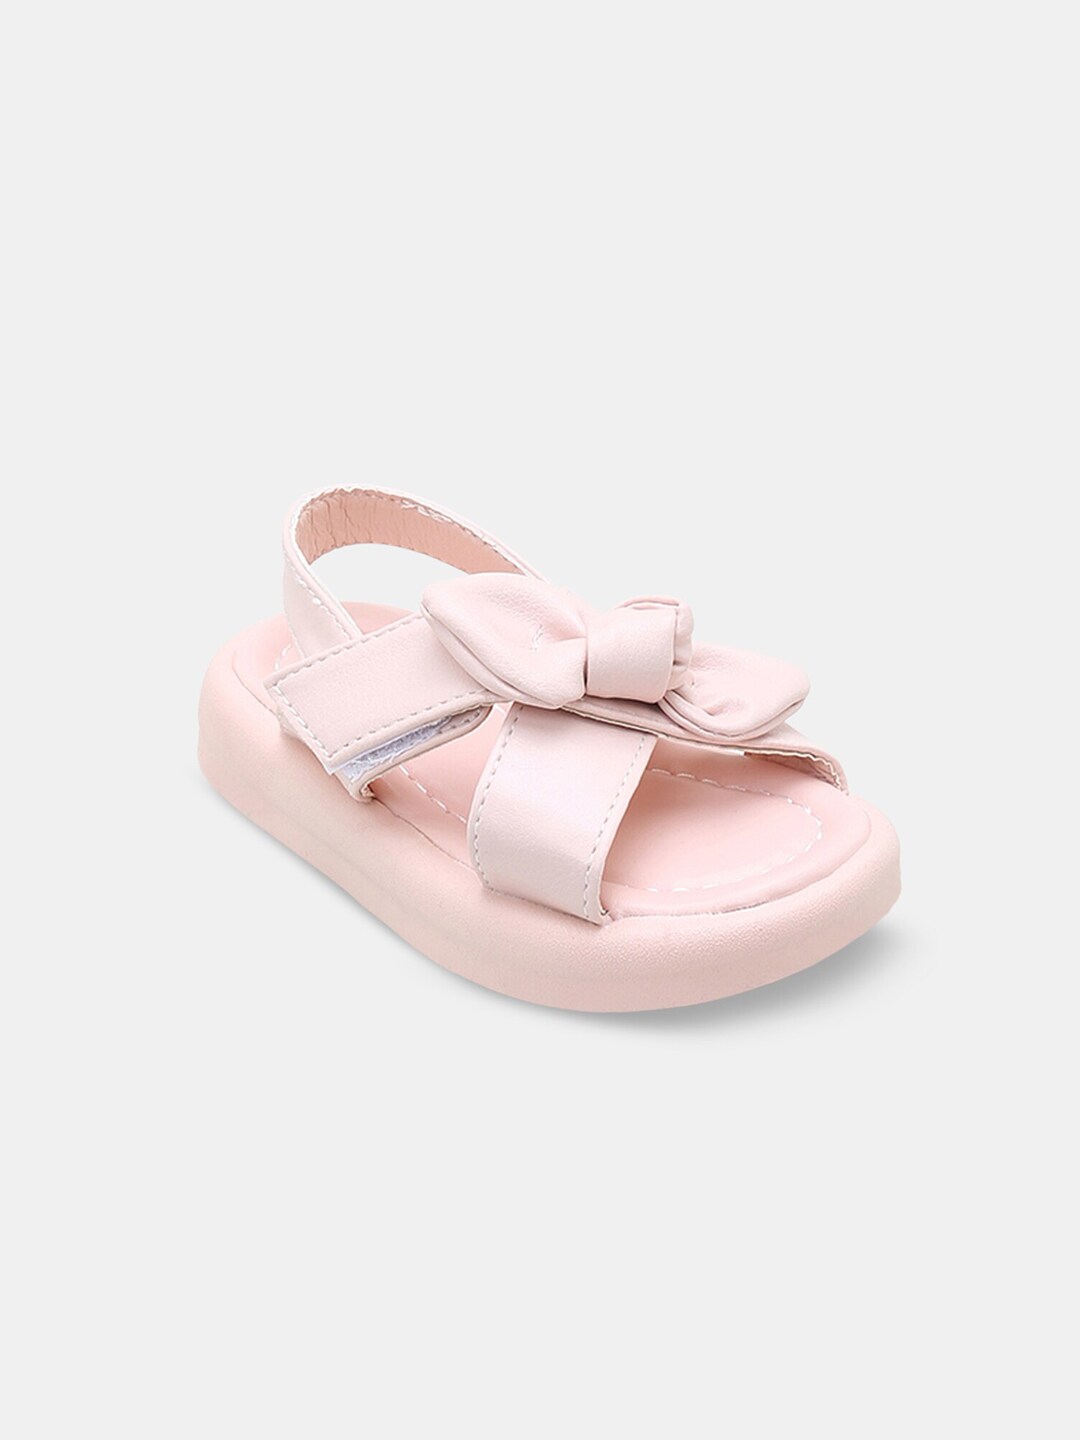 Hopscotch Girls Pink PU Comfort Sandals